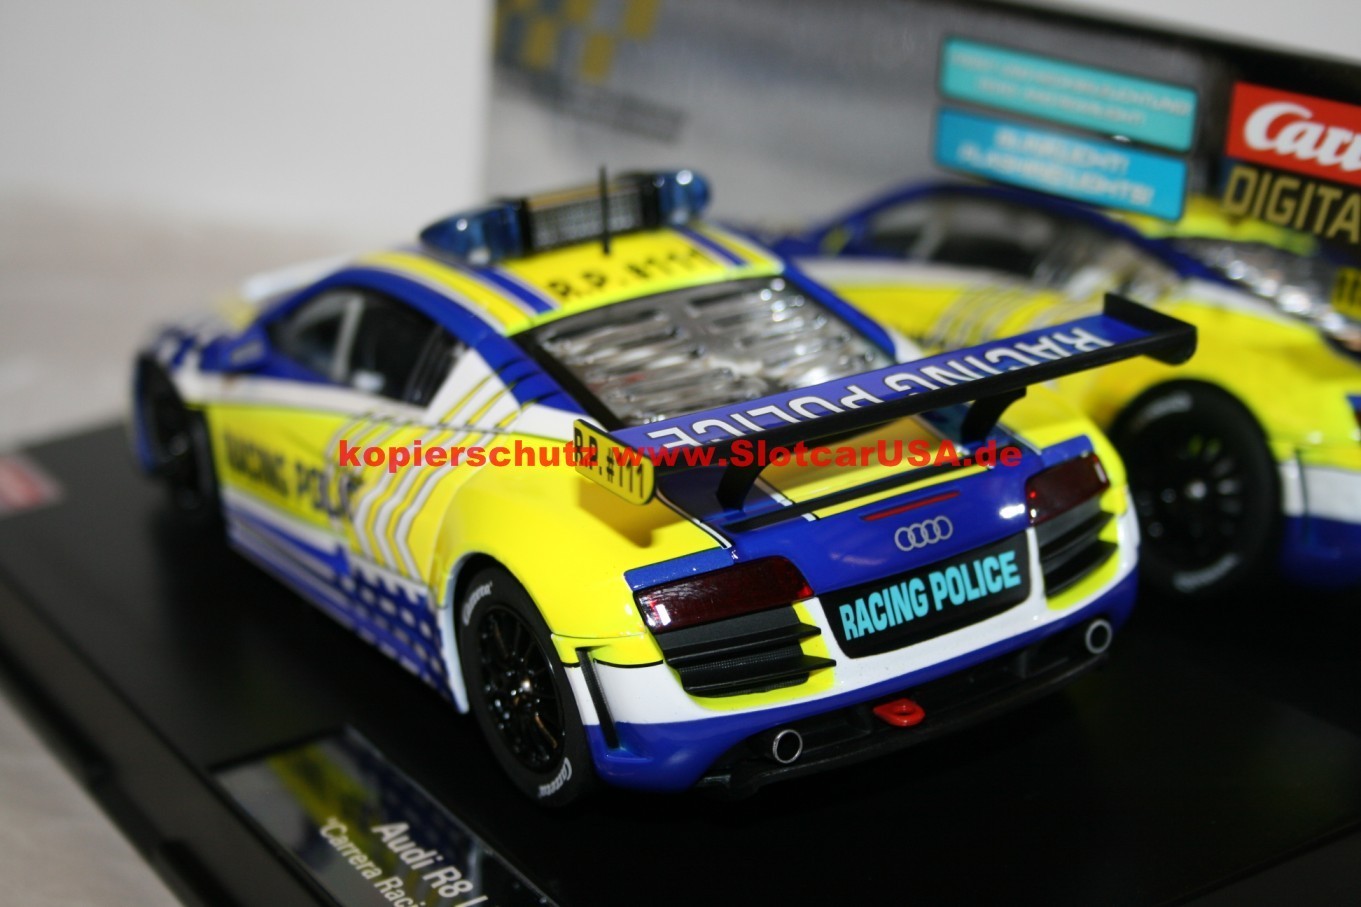 Carrera 23880 Audi R8 LMS Racing Police Digital 124 Slot Car 1:24 Scale 